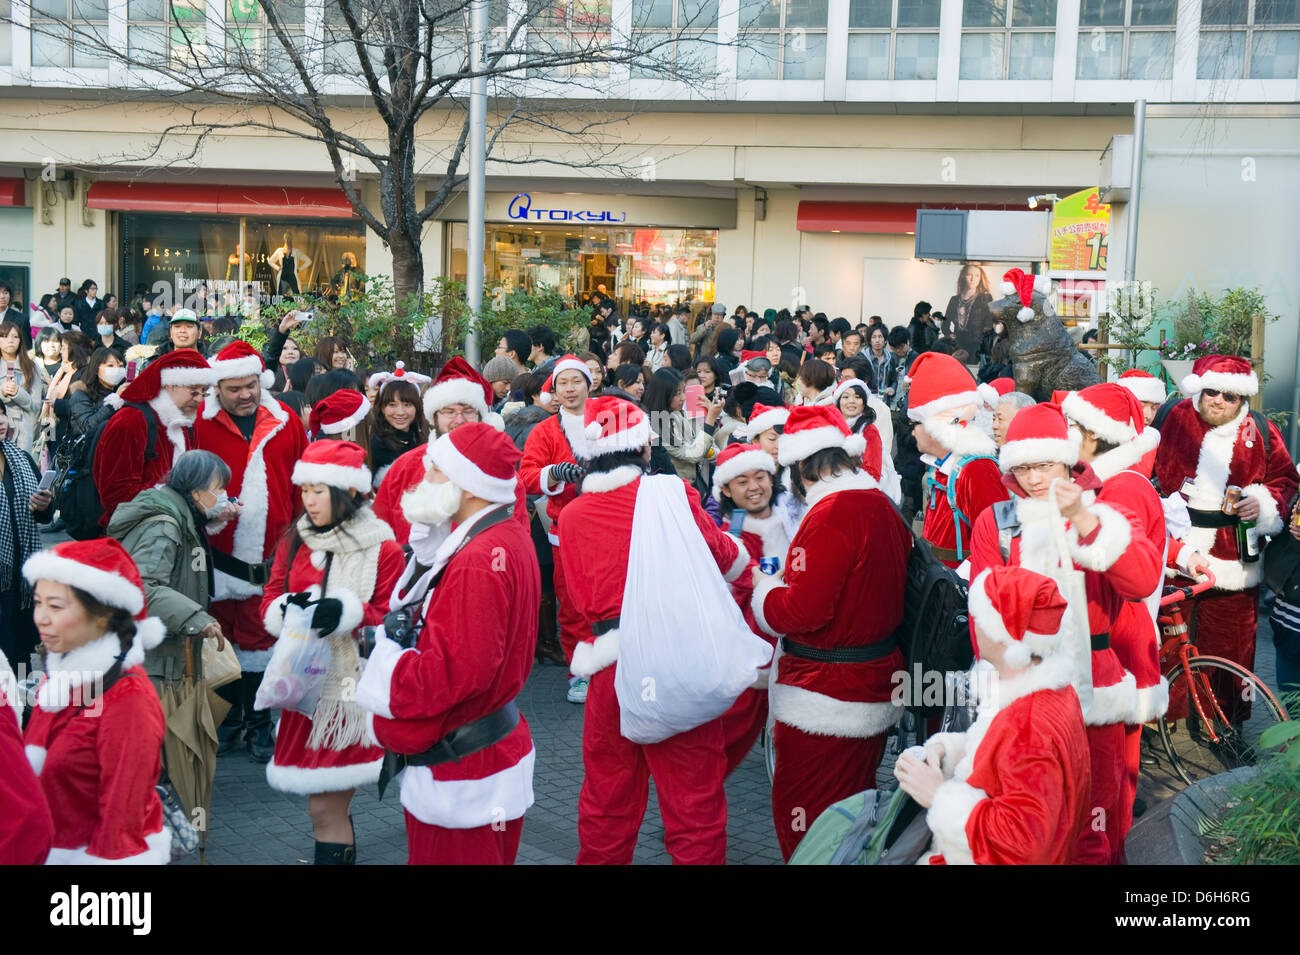 Les gens de Santa de costumes à la réunion chien Hachiko point, Shibuya, Tokyo, Japon, Asie Banque D'Images